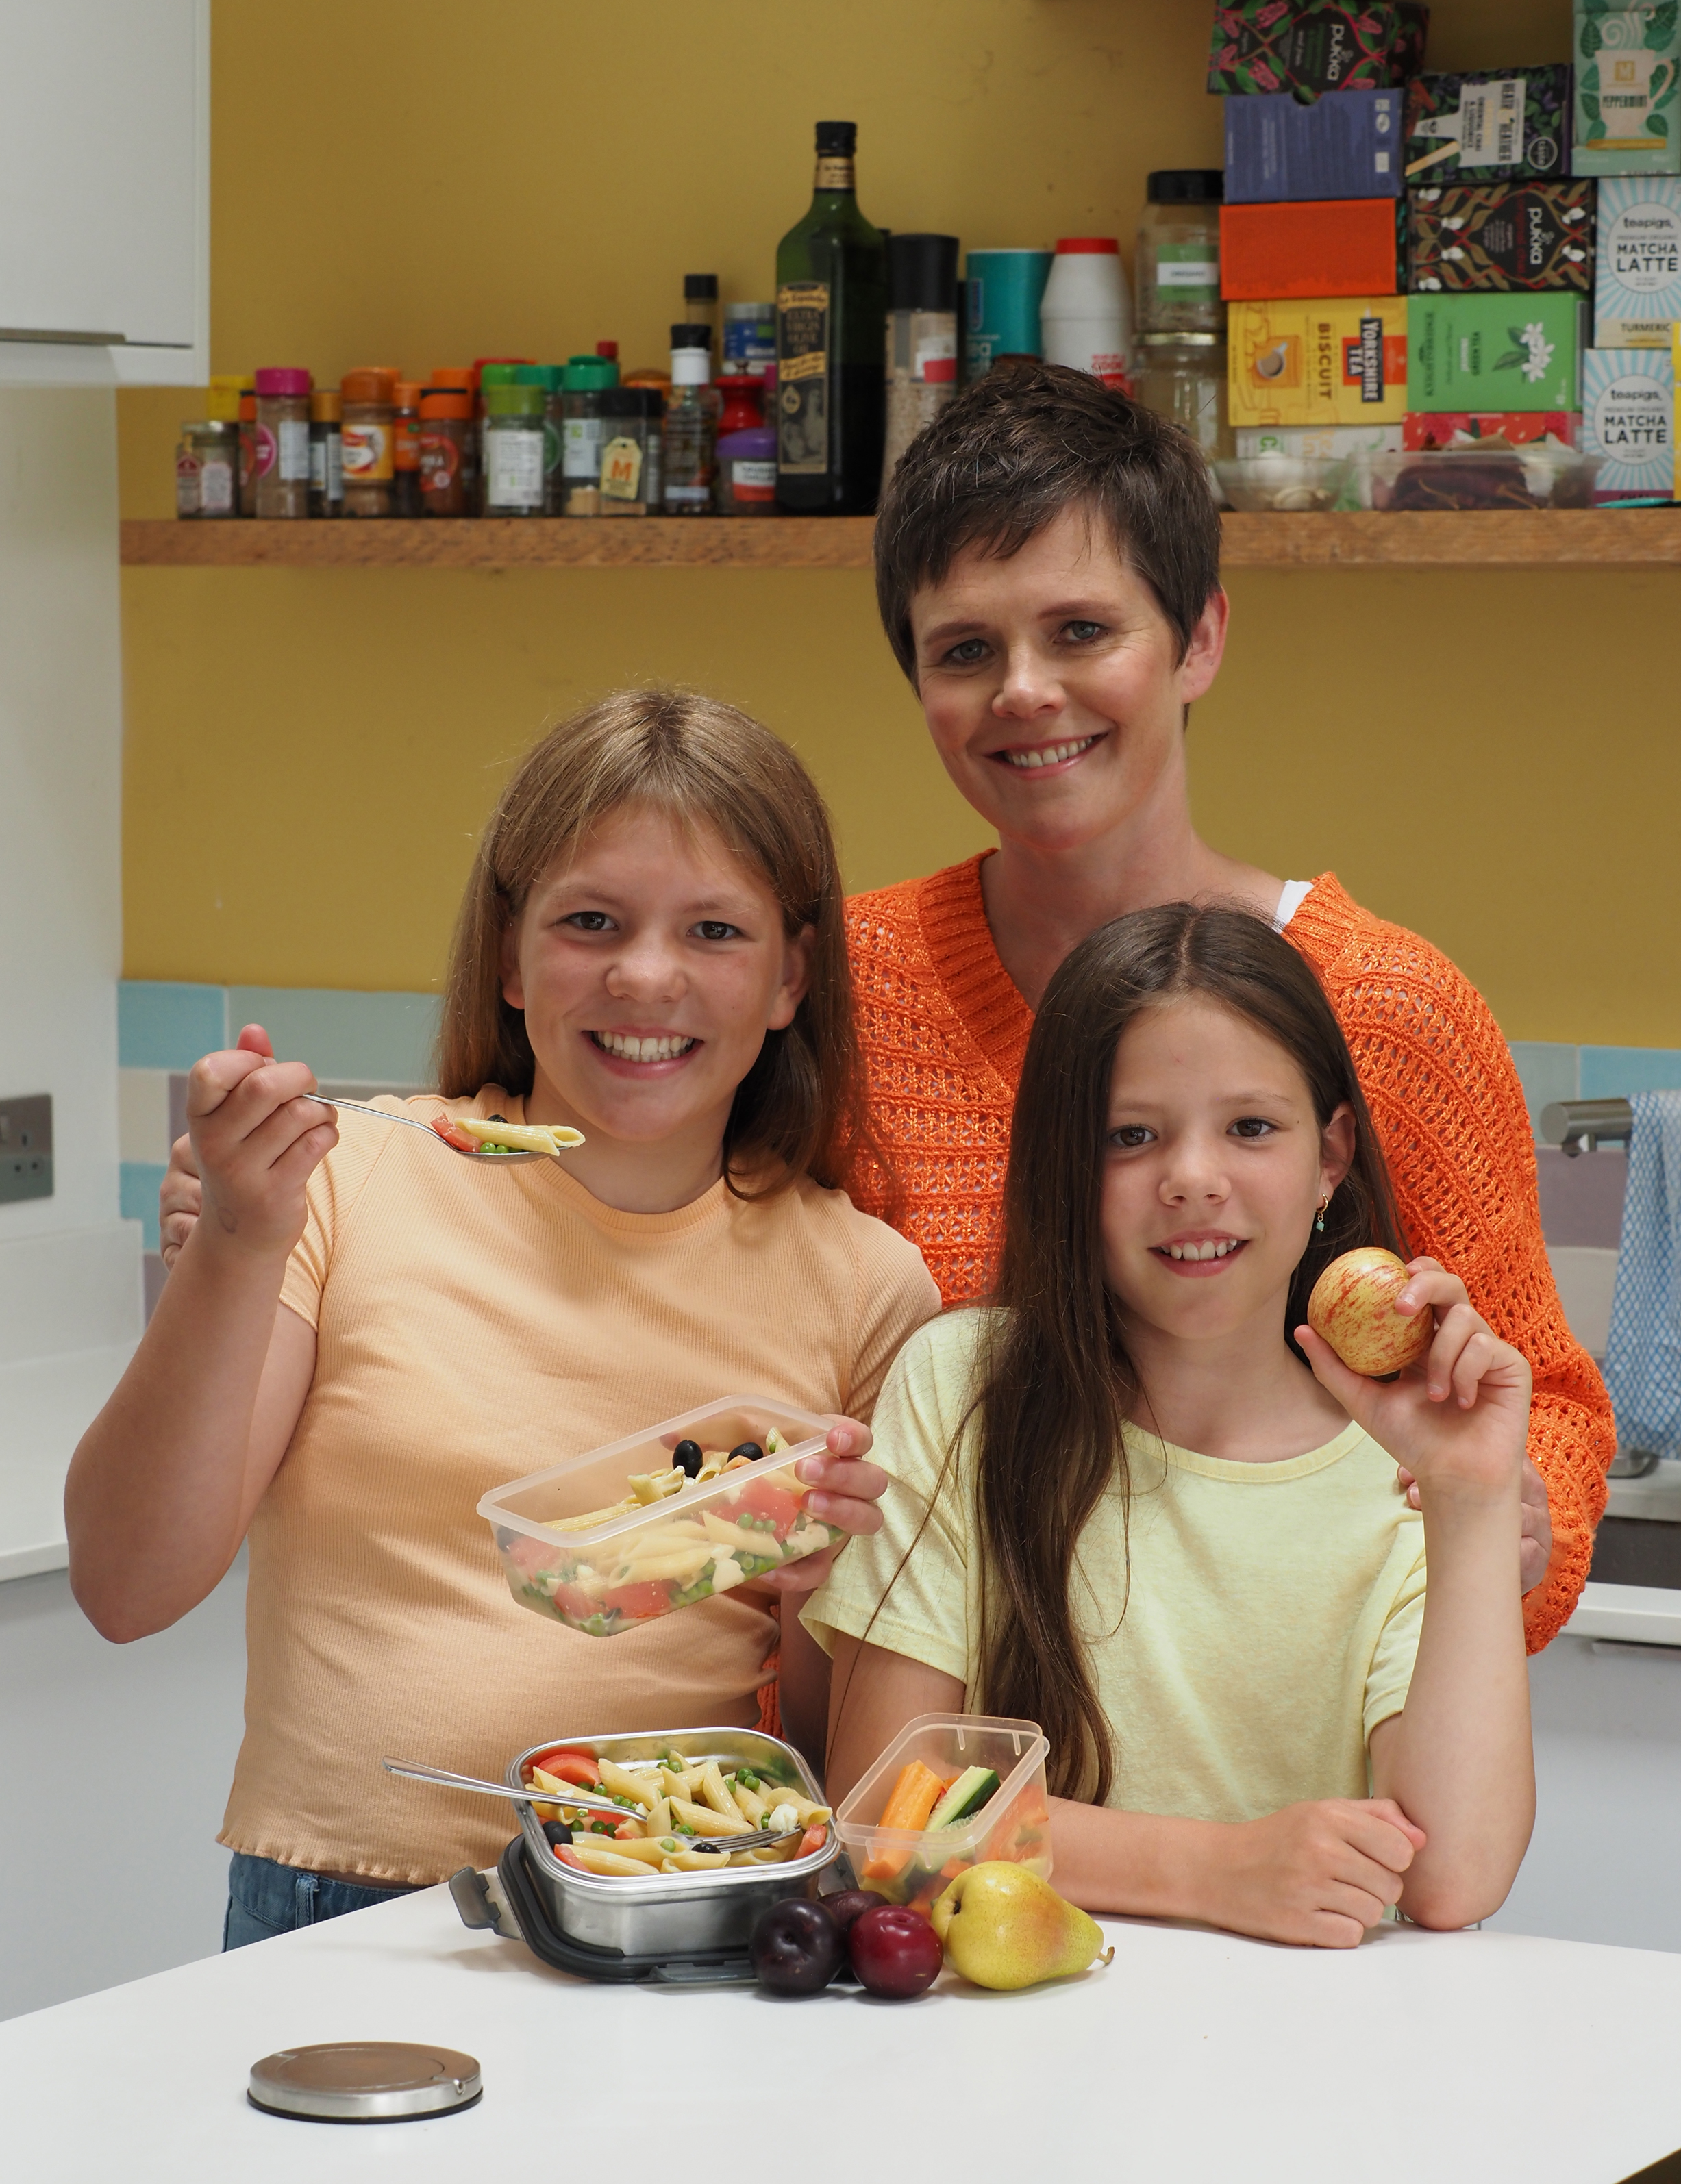 Becky Dickinson aus Bideford, Devon, legt großen Wert darauf, ihren beiden Töchtern Daisy und Anya ein gesundes Lunchpaket anzubieten